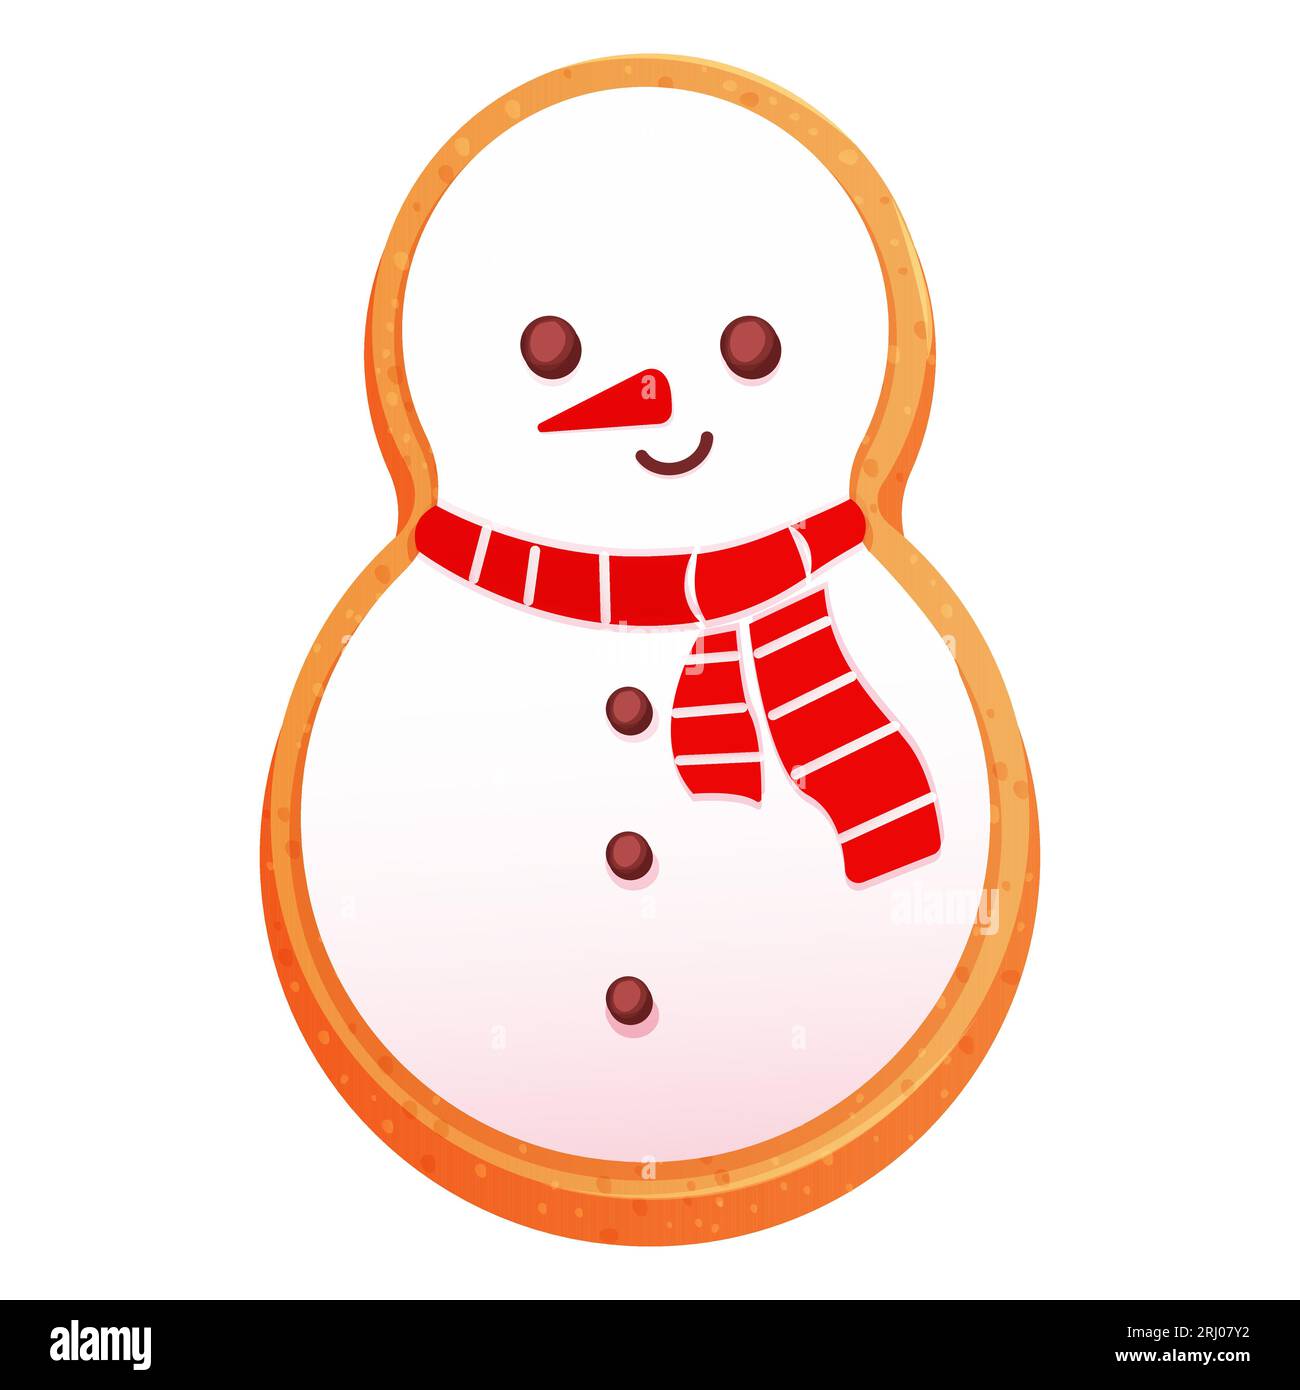 Personnage de bonhomme de neige mignon en pain d'épice avec décoration de glaçage, dessert de saison, cookie dans le style de bande dessinée isolé sur fond blanc. Illustration vectorielle Illustration de Vecteur